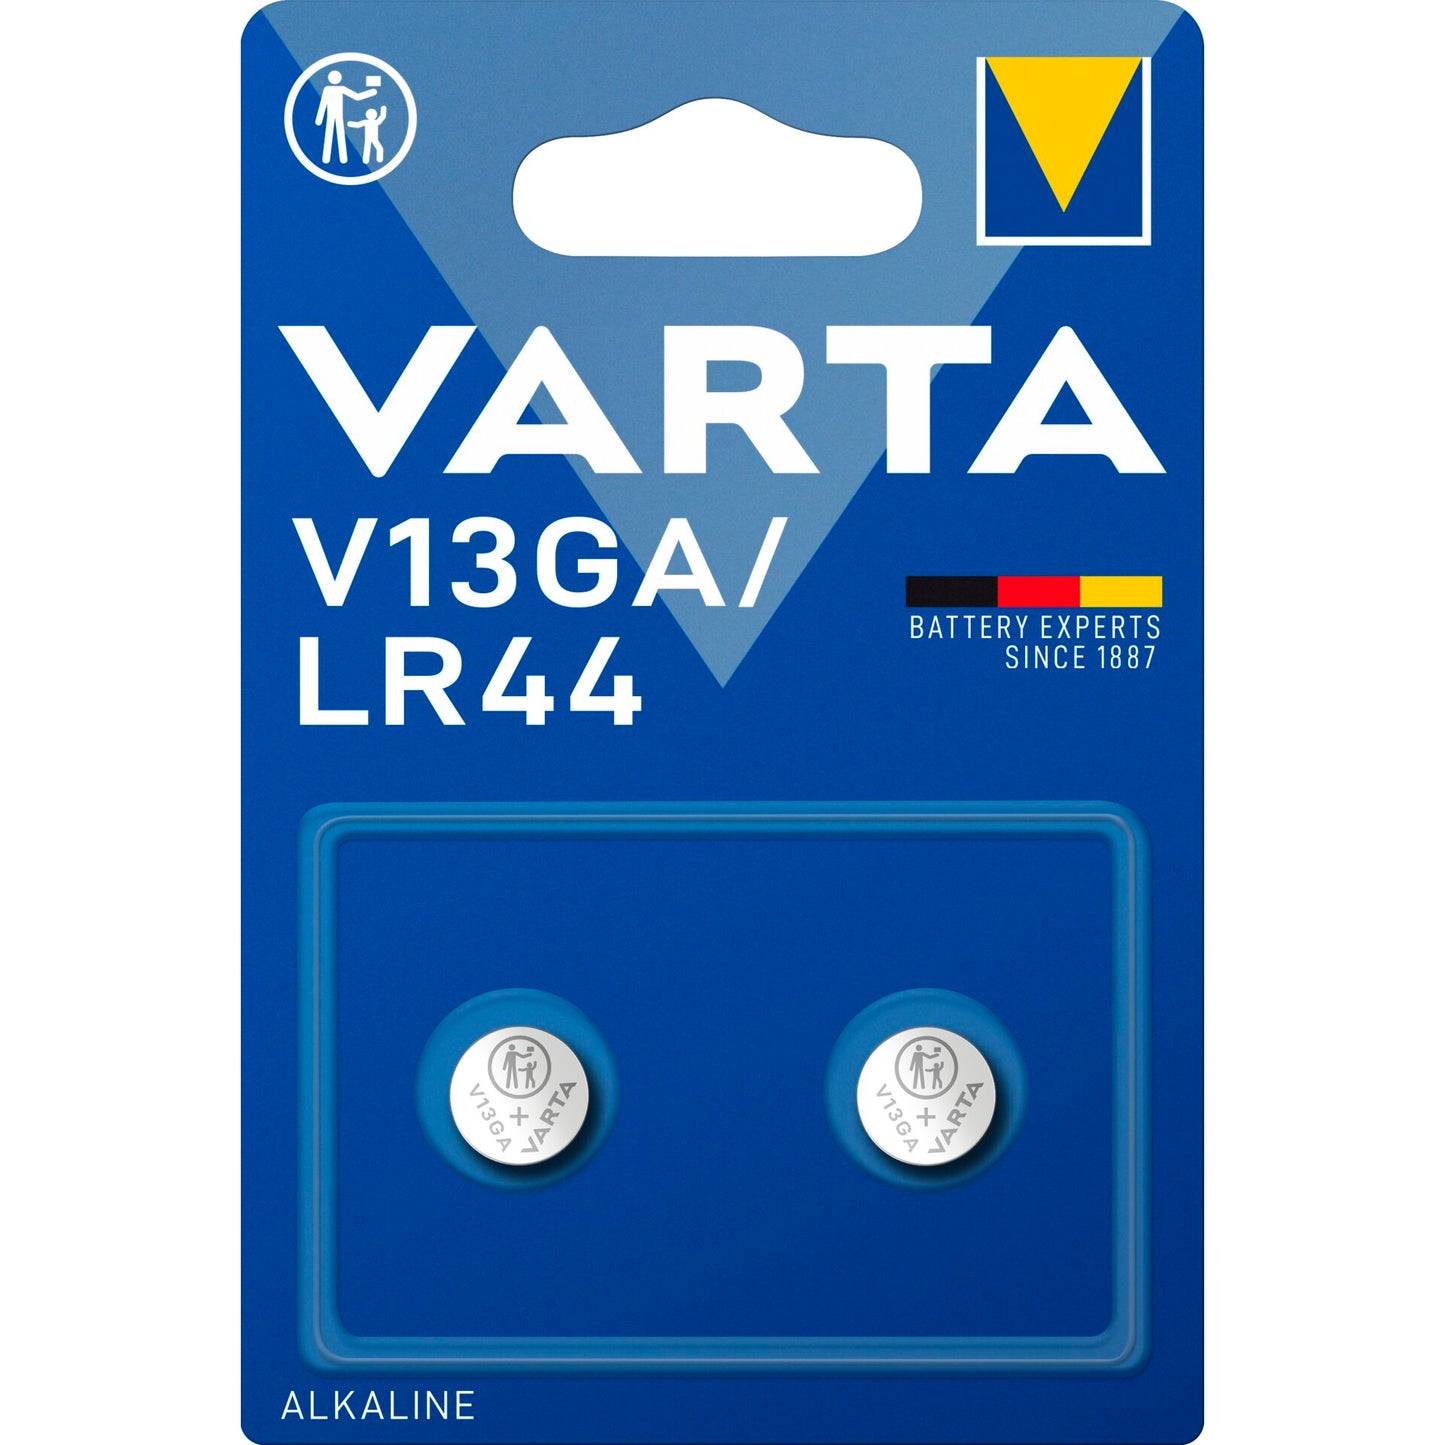 Varta 2x LR44 / V13GA 1.5V Alkaline Battery